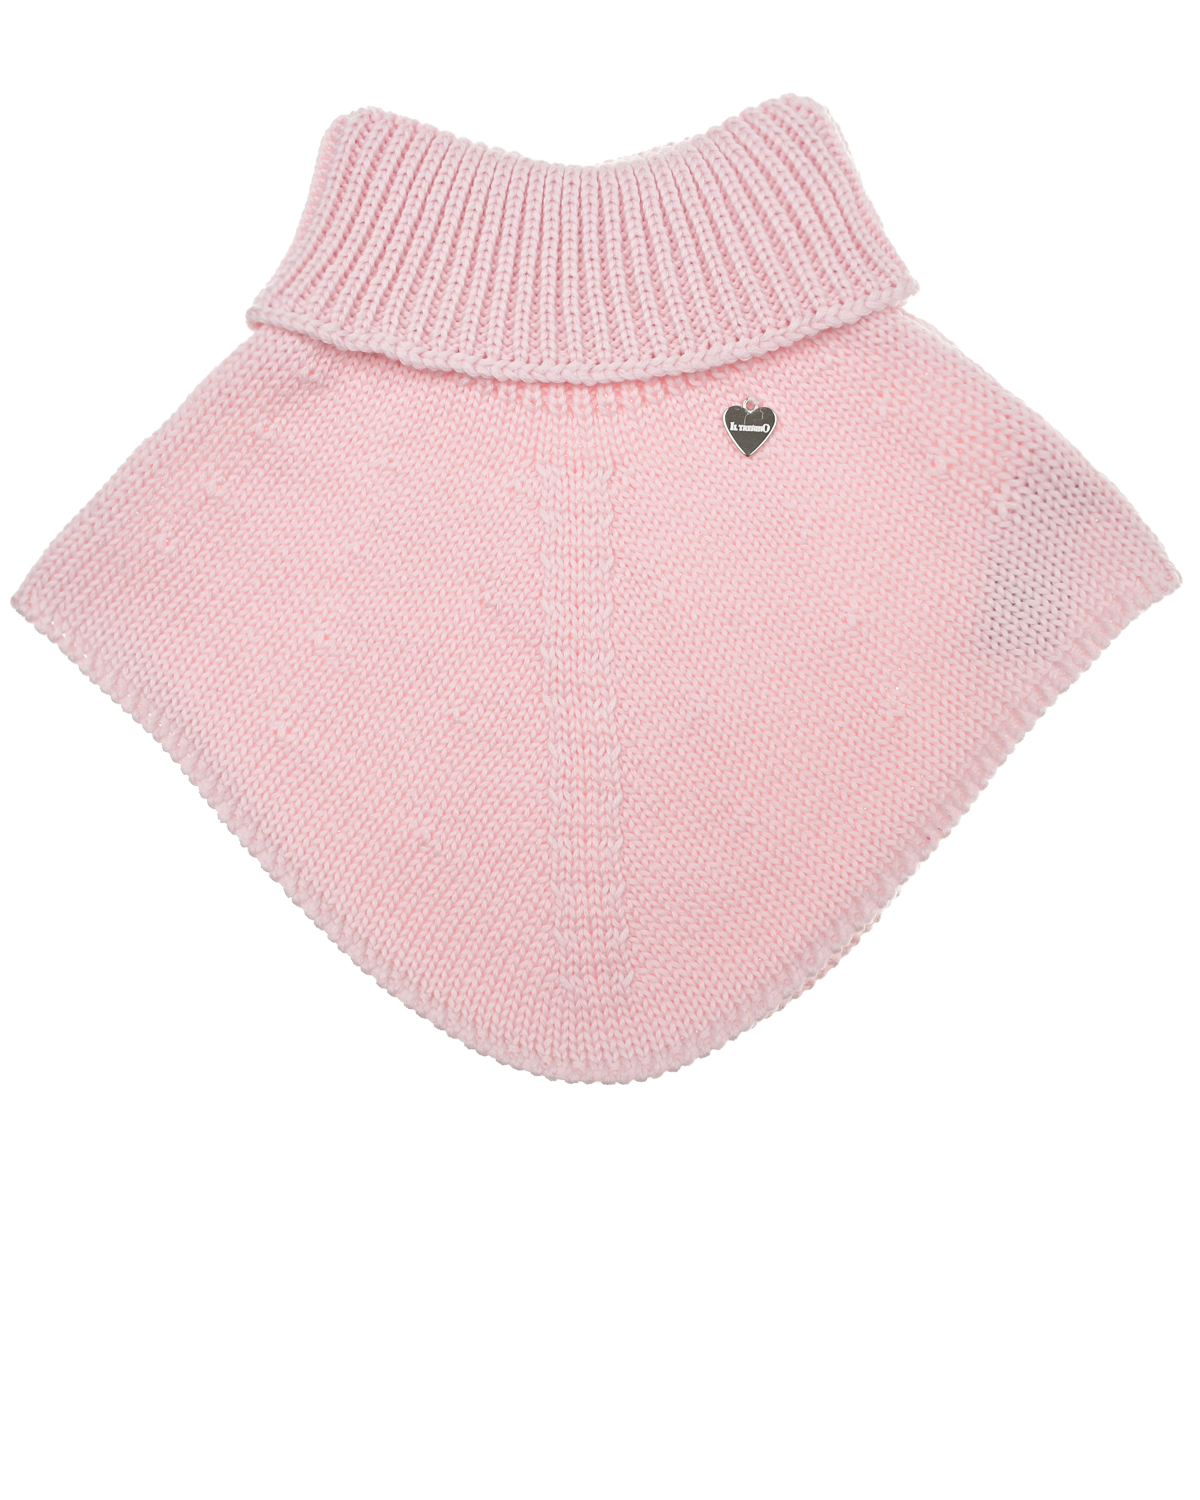 Базовый розовый шарф-горло Il Trenino детский, размер unica - фото 1